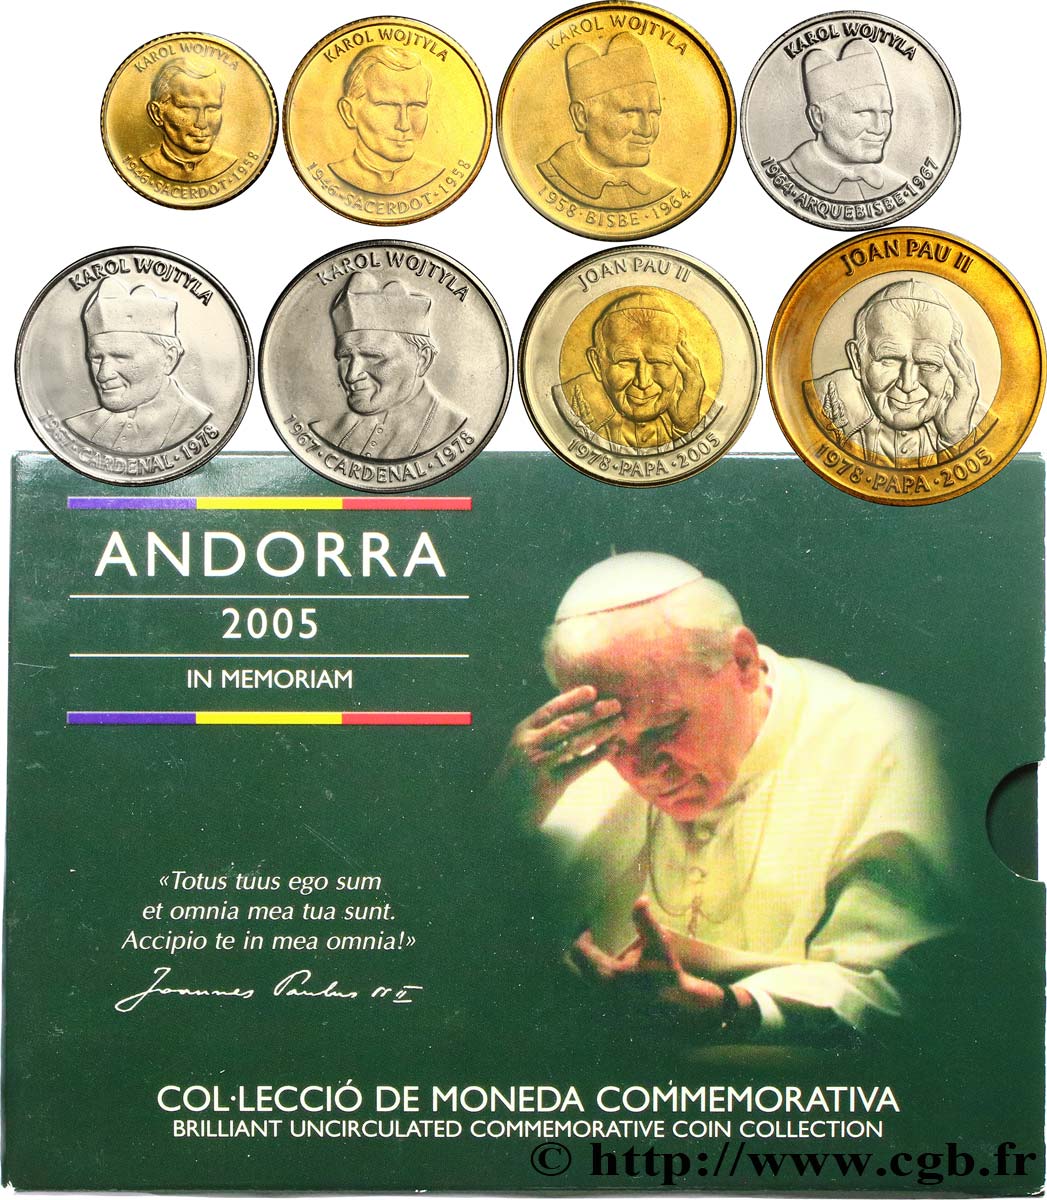 ANDORRA SÉRIE Diner BRILLANT UNIVERSEL - Série commémorative en l’honneur du pape Jean-Paul II 2005  Brilliant Uncirculated 